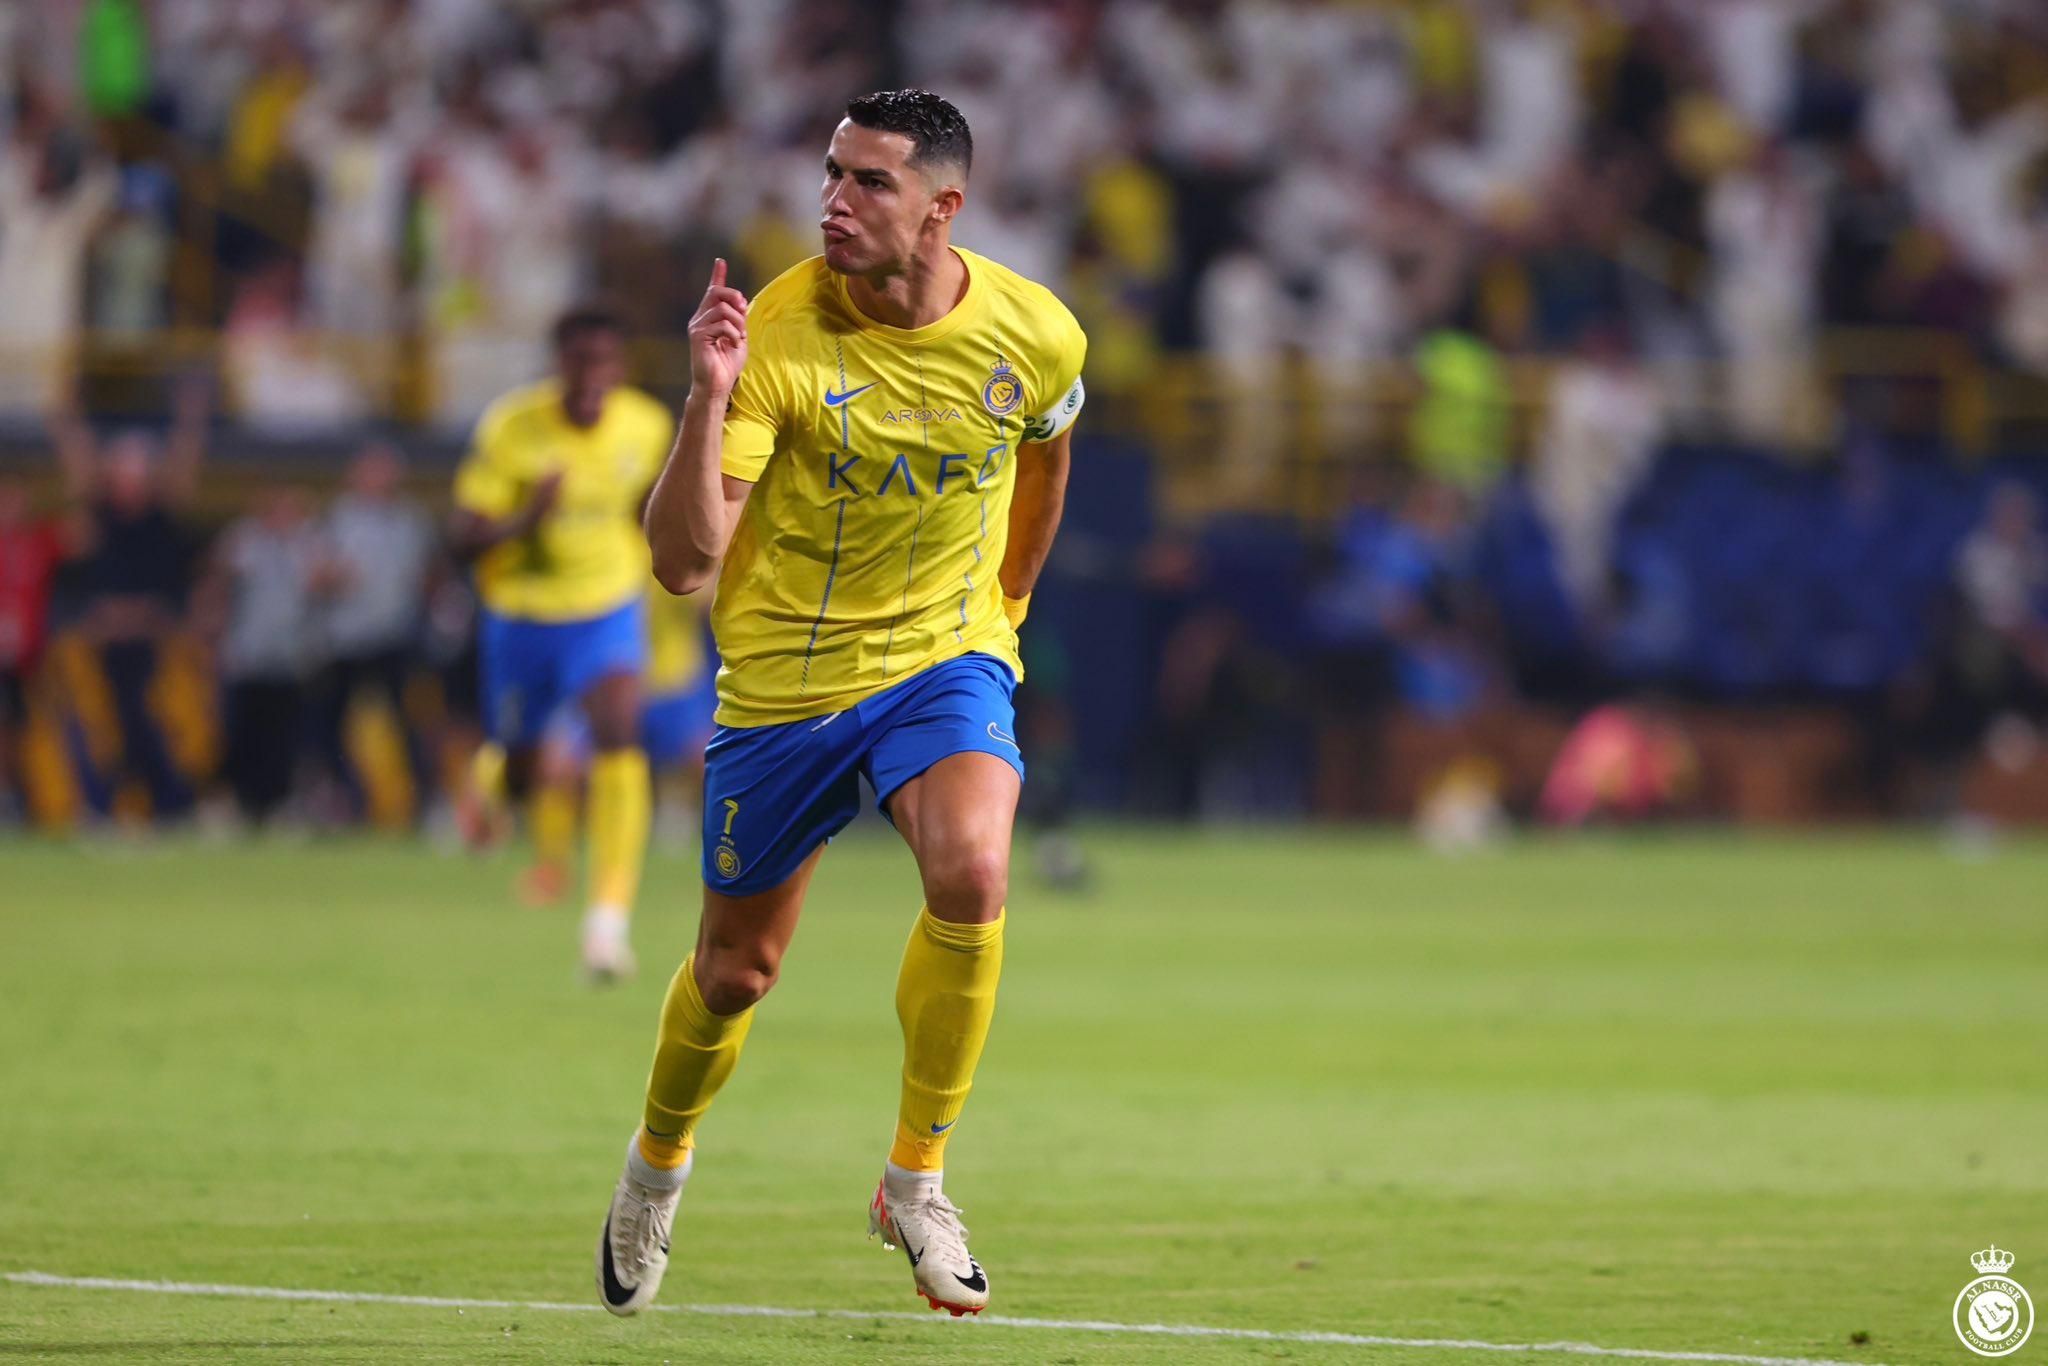 Com gols de falta de Talisca e CR7, Al Nassr vira sobre Damac FC